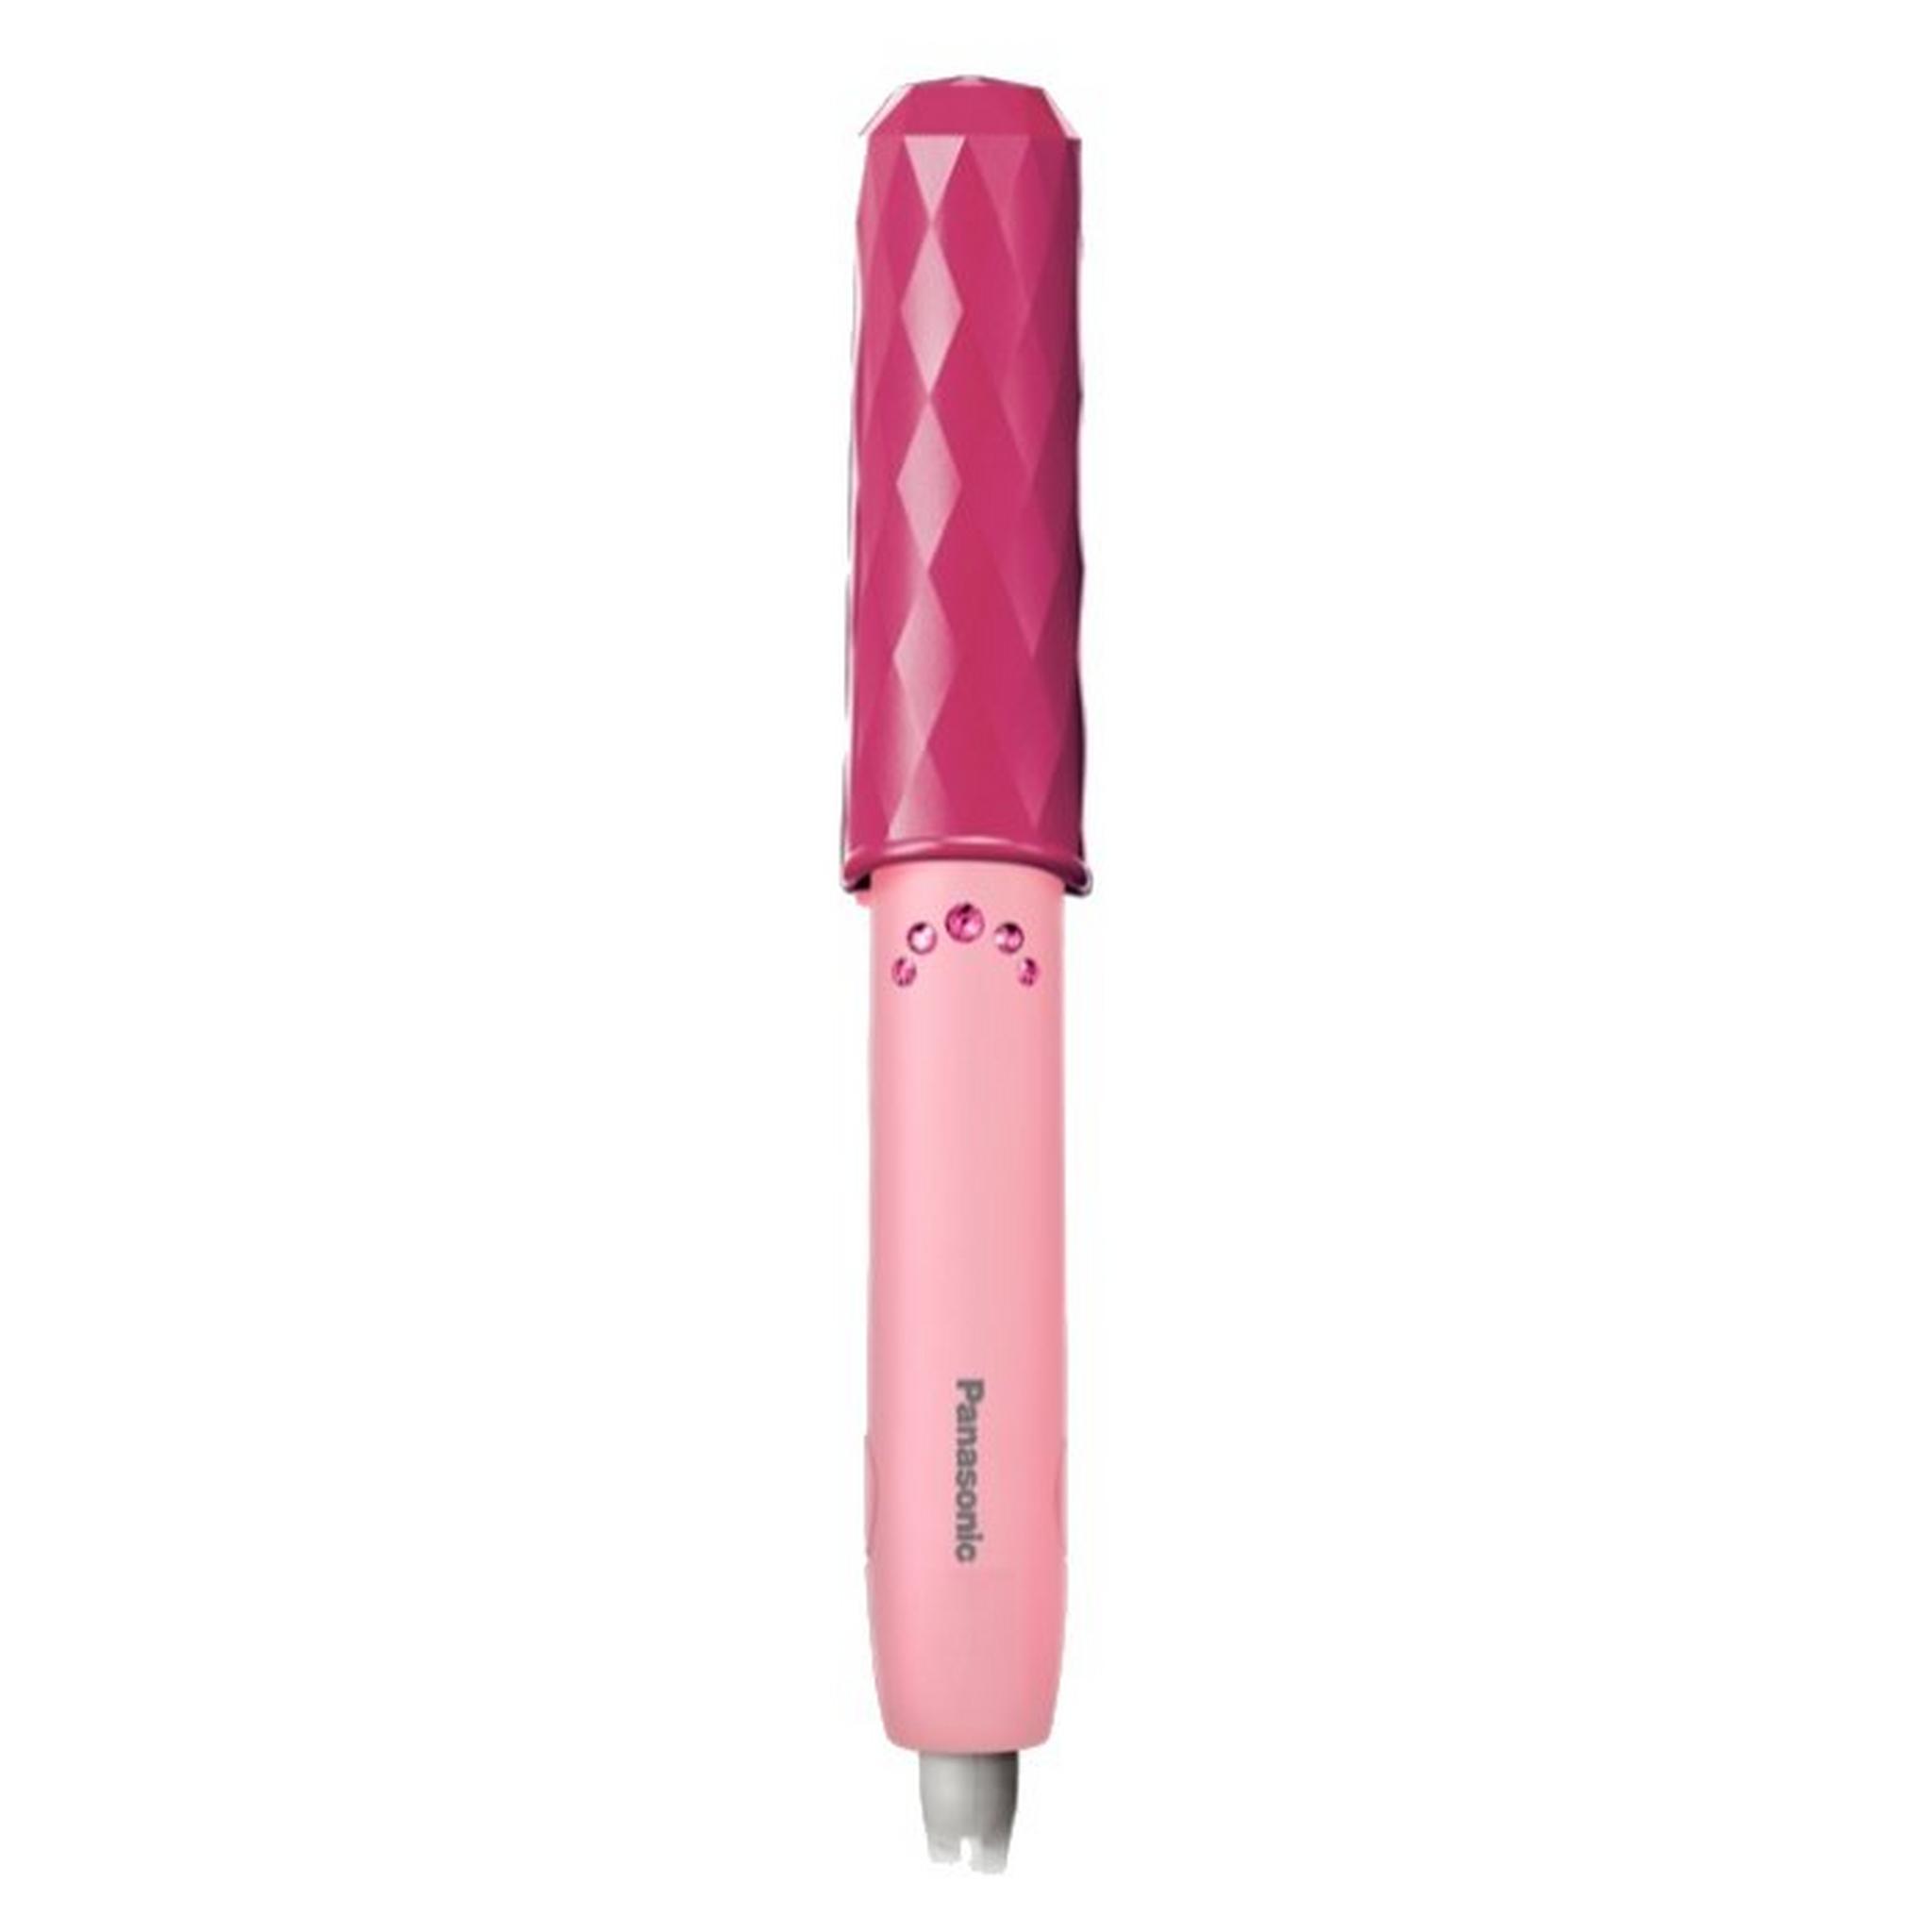 Panasonic Hair Straightener - Pink